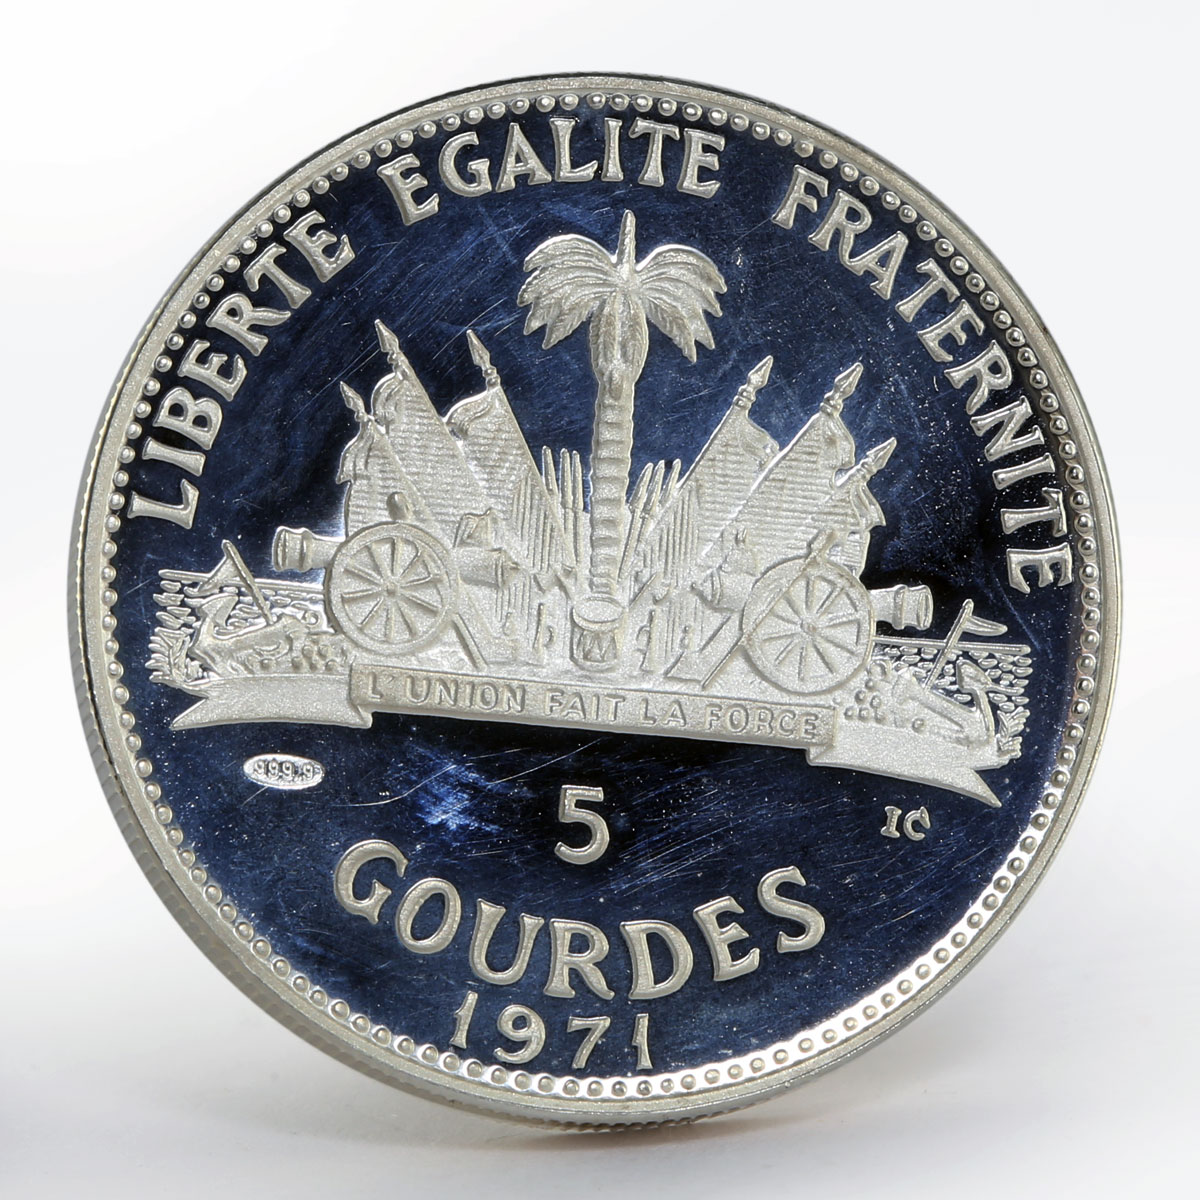 Haiti 5 Gourdes Haitienne paradise proof silver coin 1971